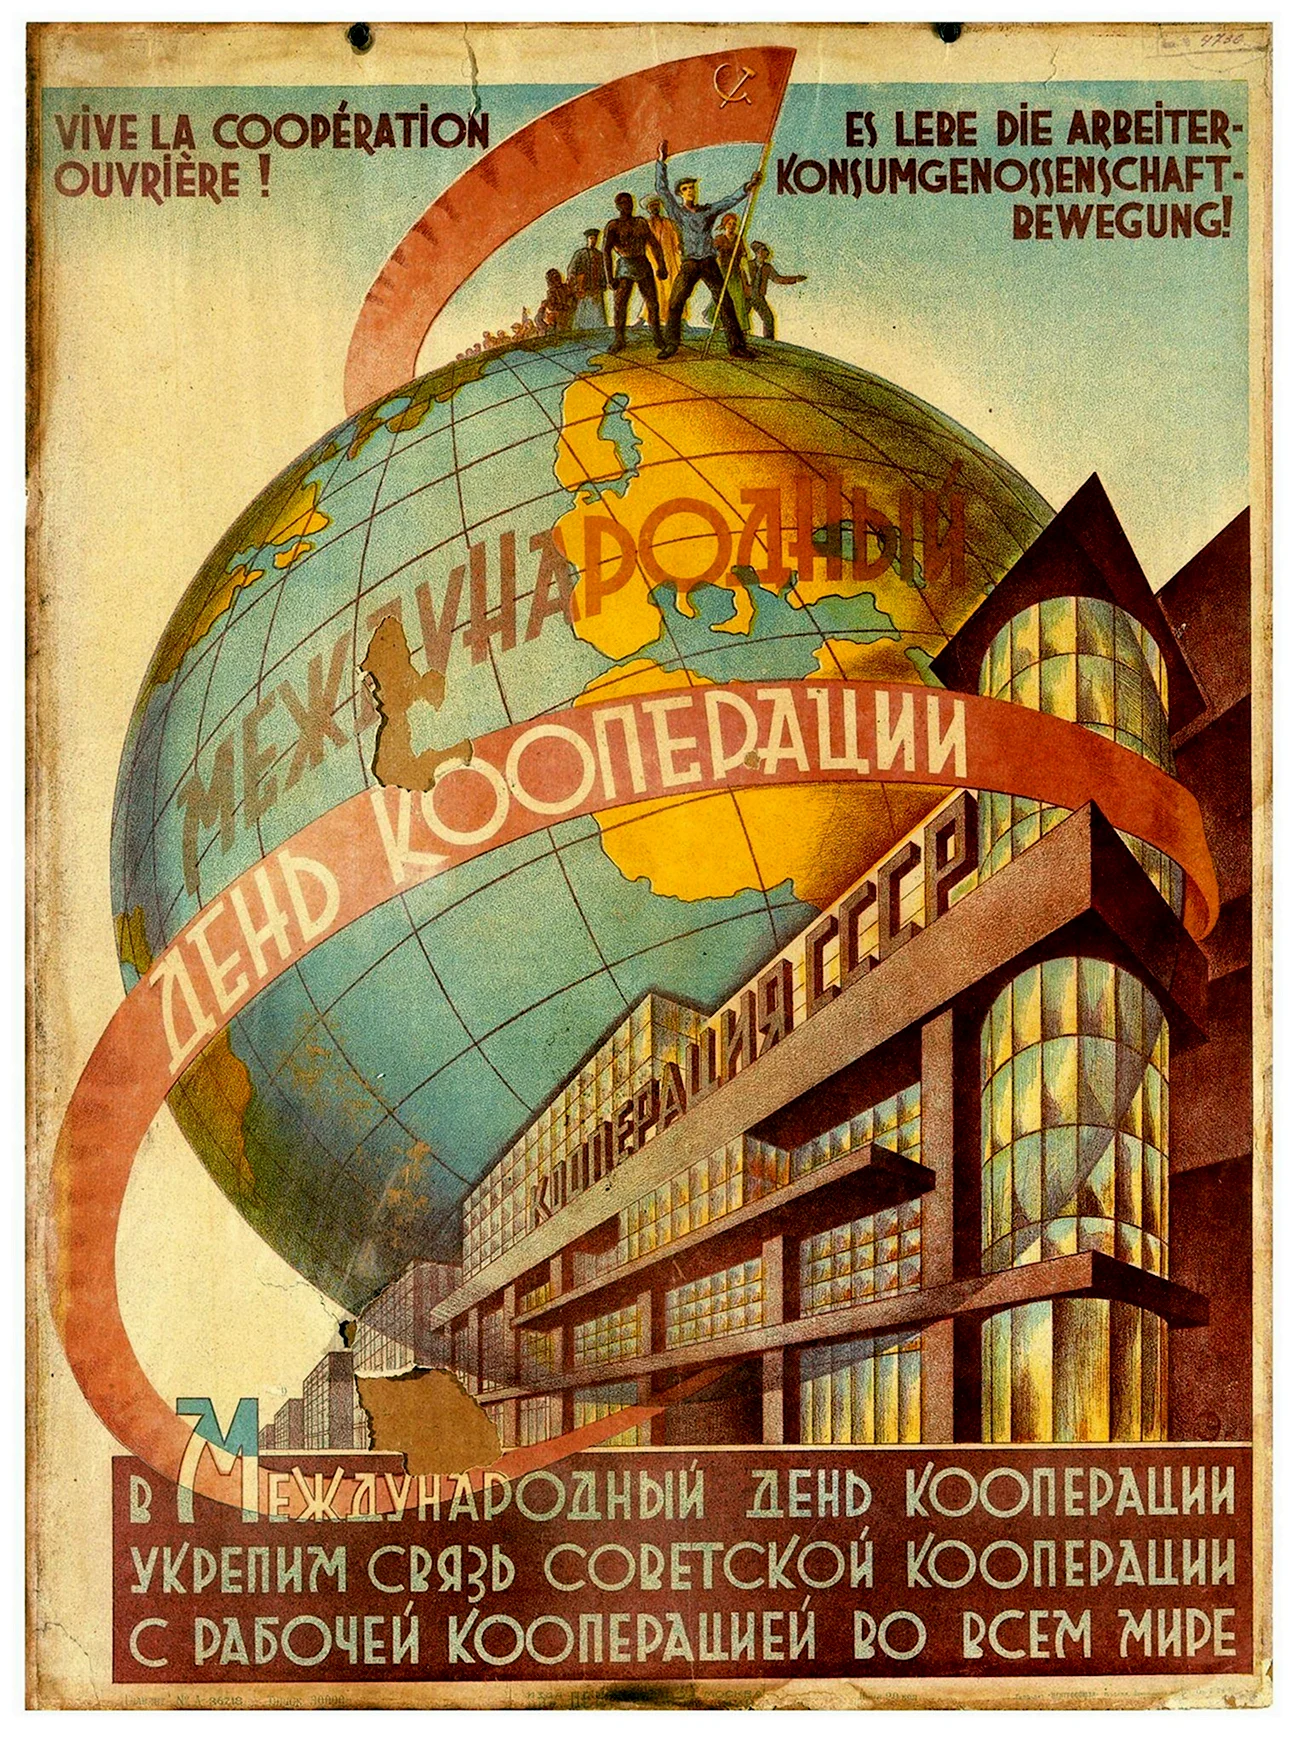 Кооператив плакат СССР. Поздравление